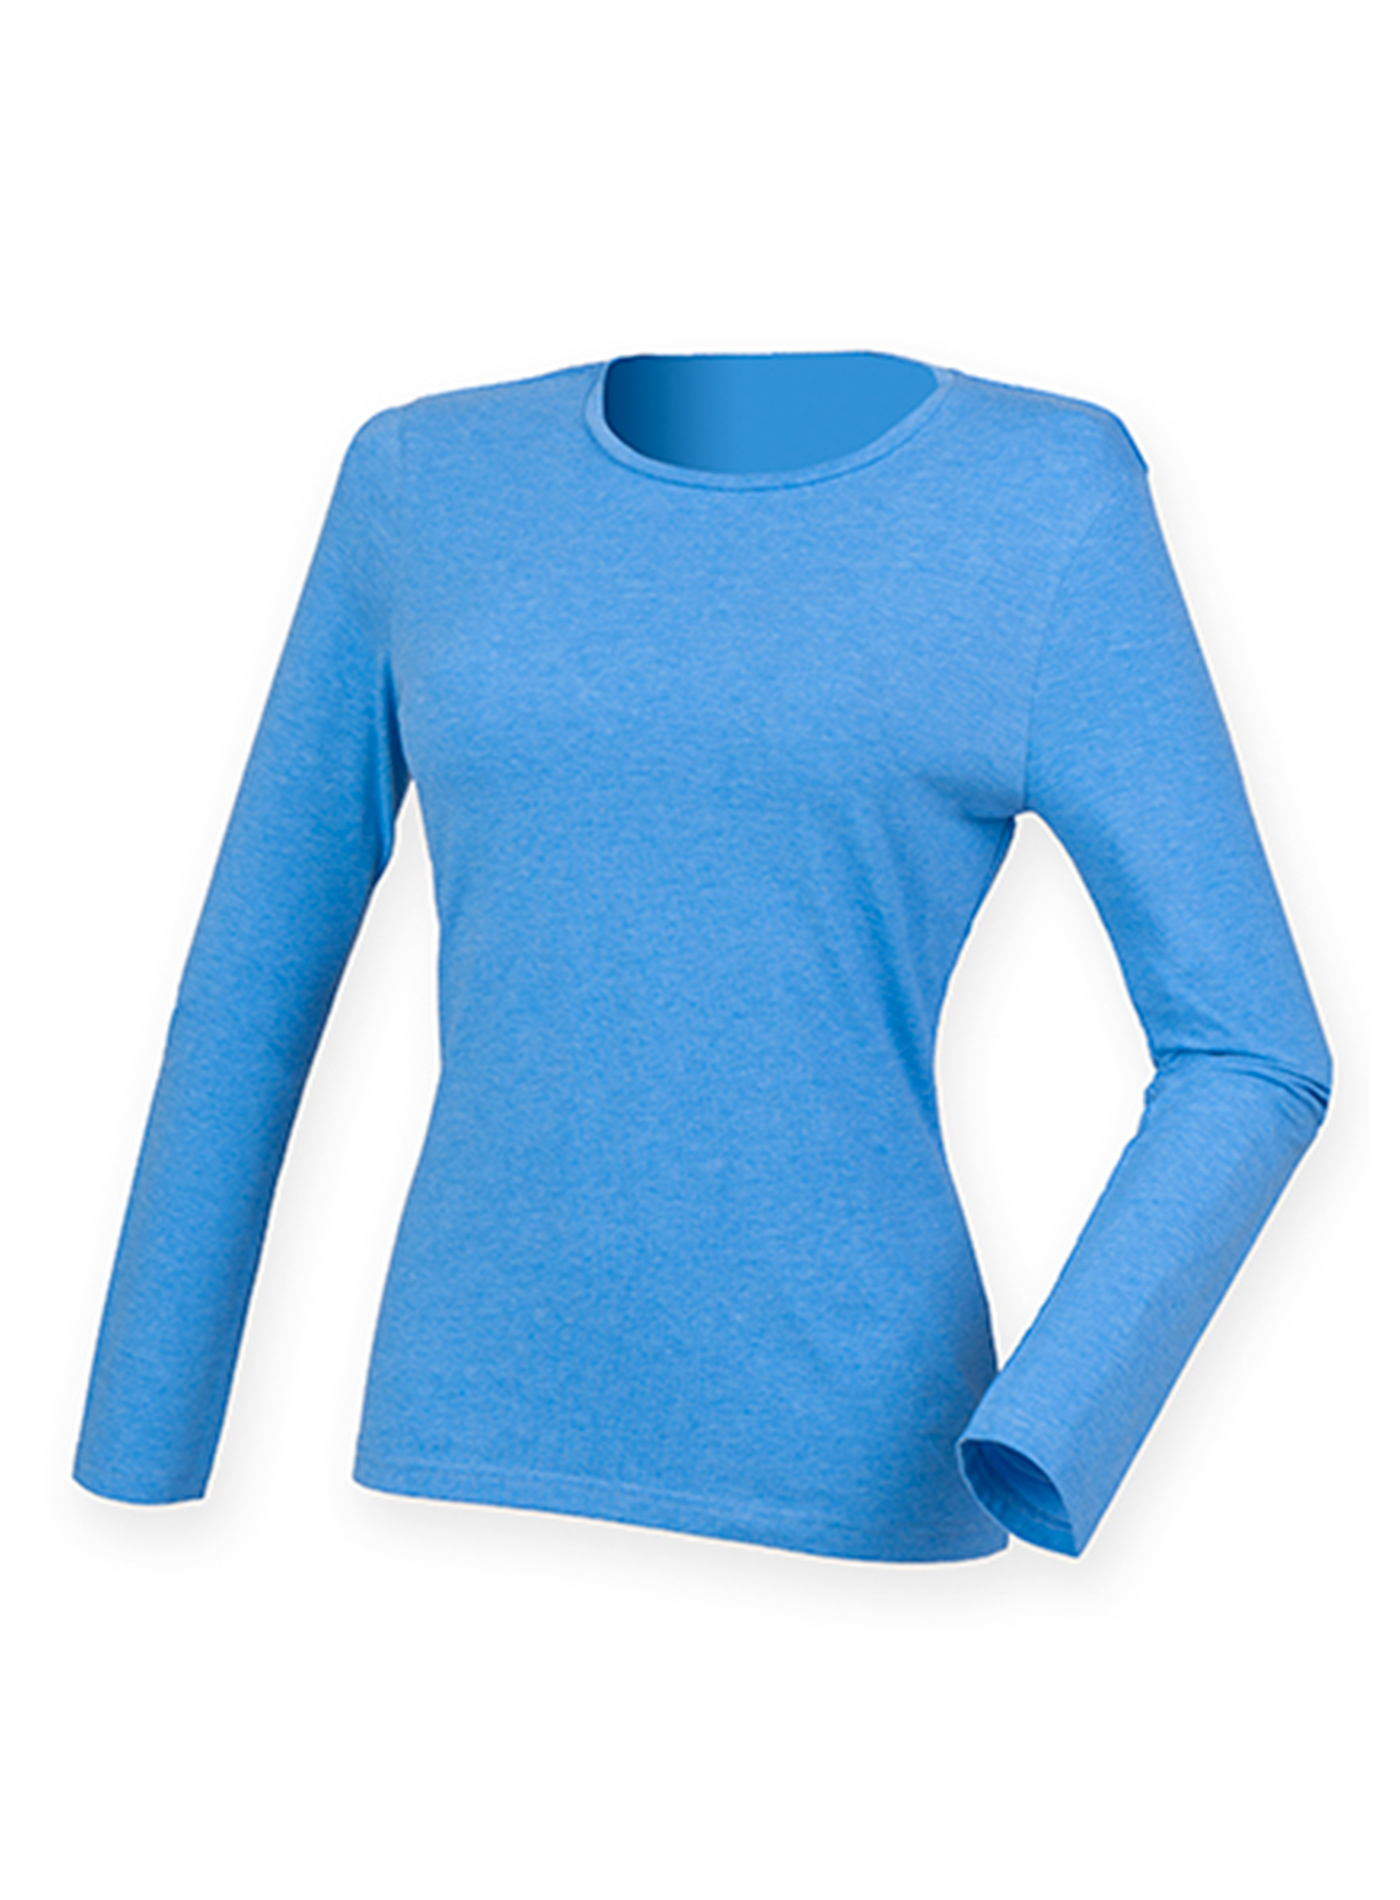 Dámské tričko s dlouhým rukávem Skinnifit Feels Good - Kobaltově modrá XS